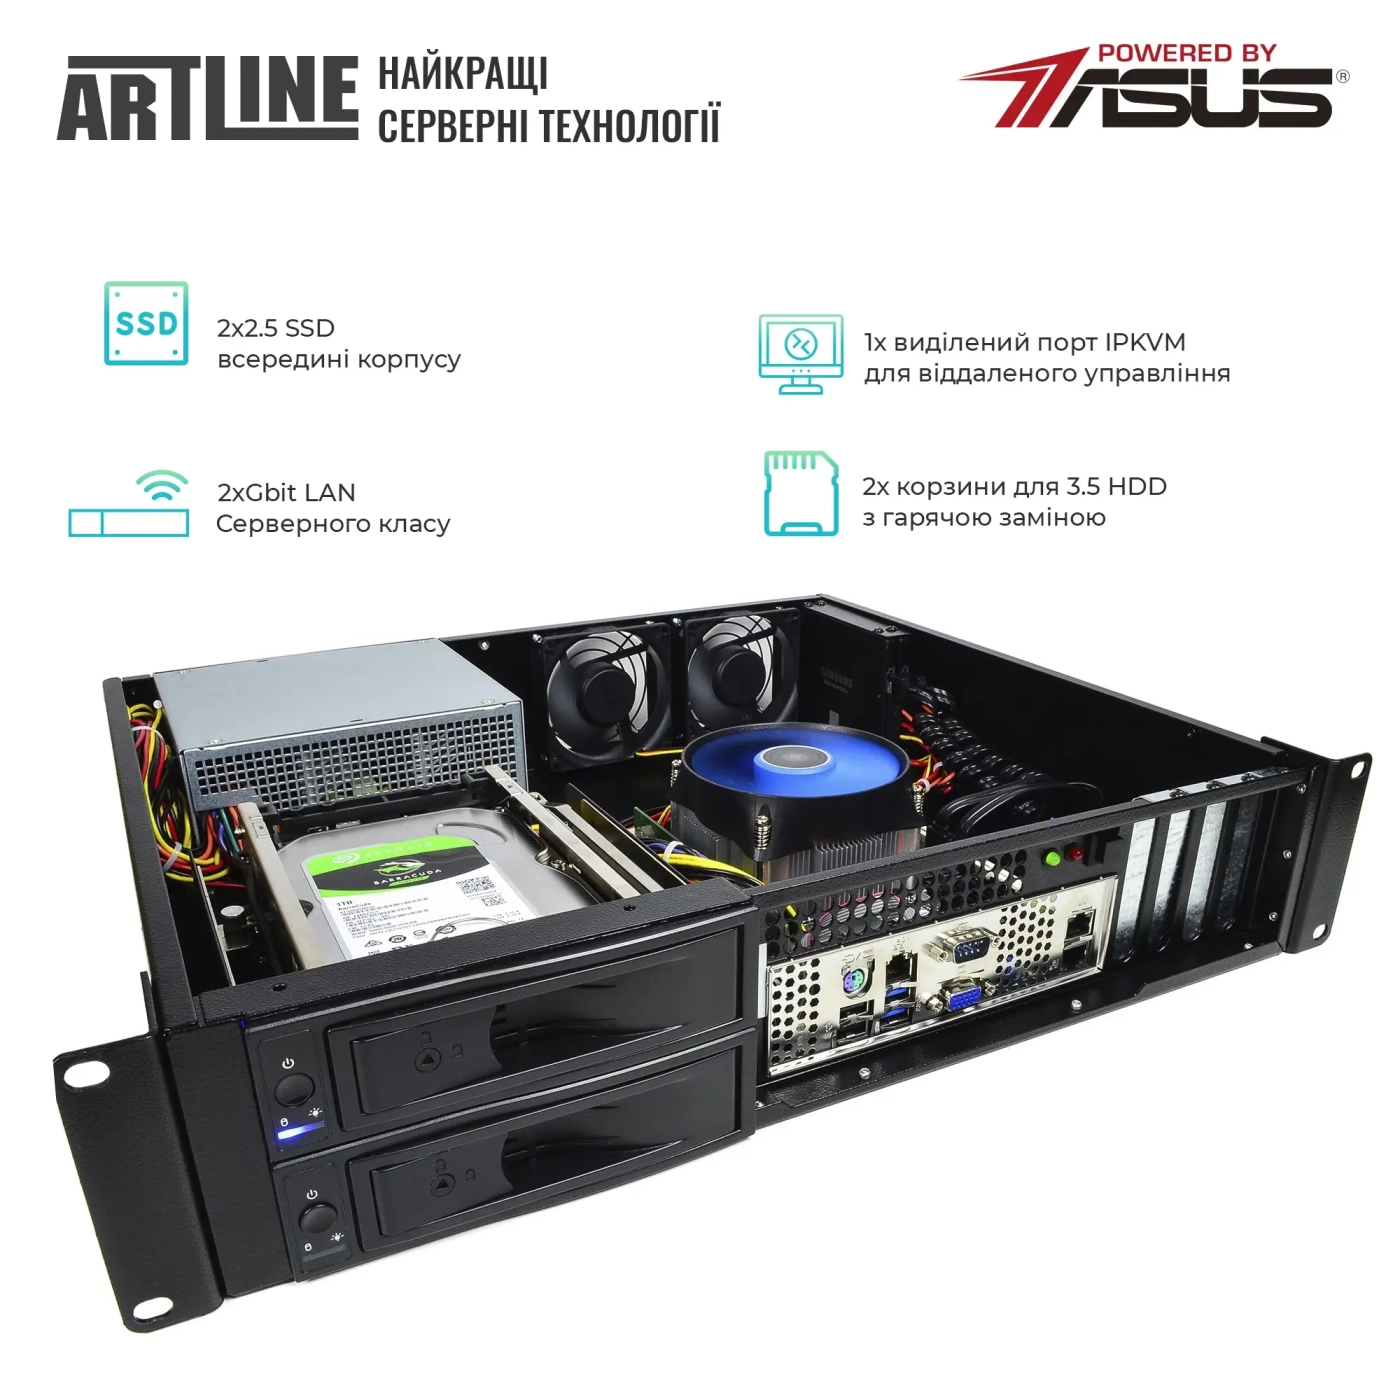 Купить Сервер ARTLINE Business R35 (R35v53) - фото 2